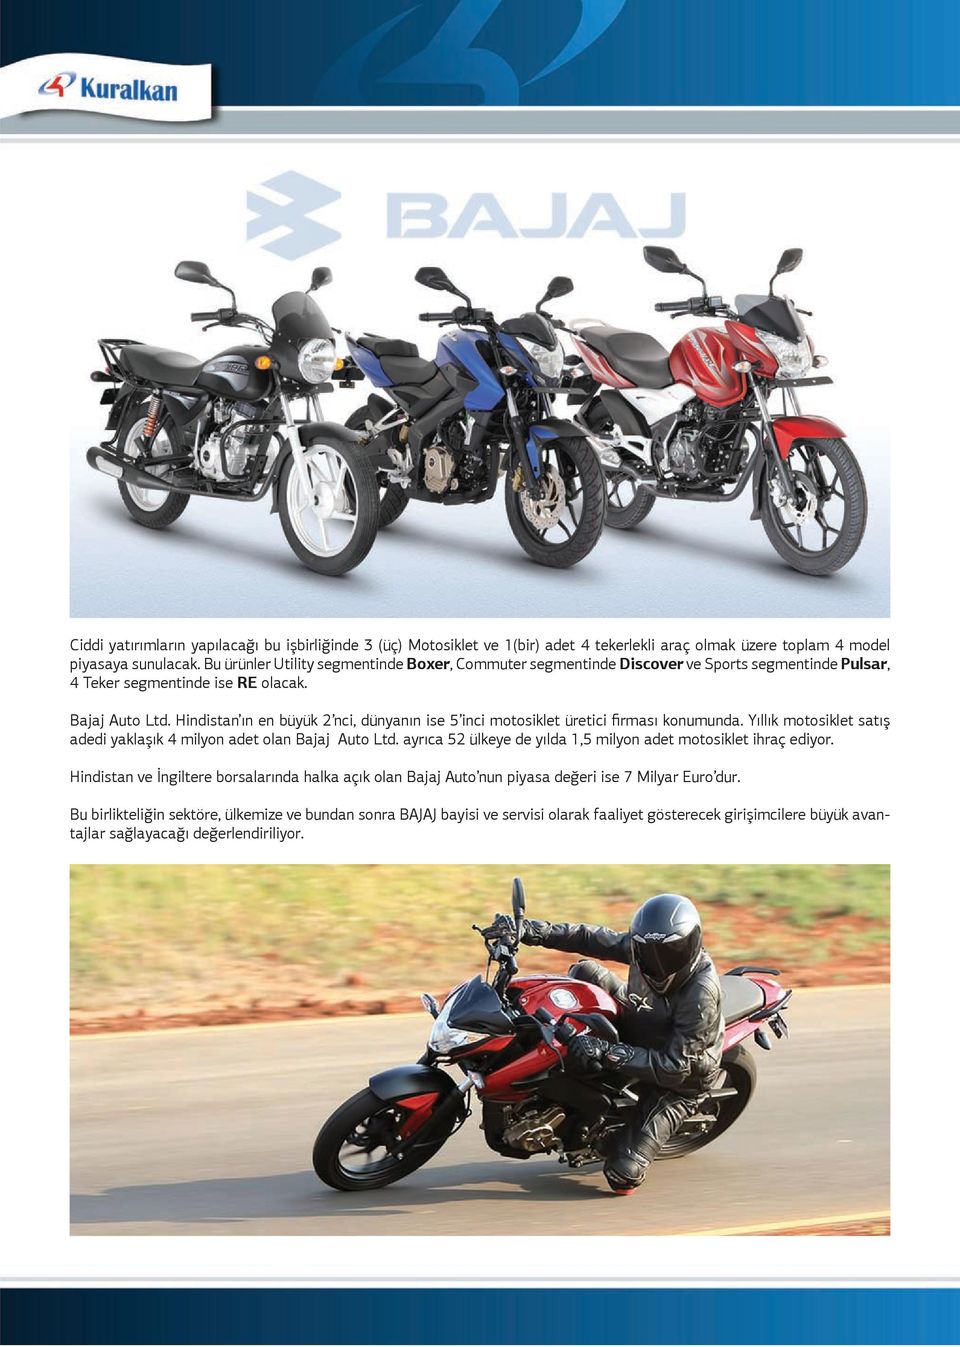 Hindistanın en byk nci dnyanın ise inci motosiklet retici firması konumunda. Yıllık motosiklet satış adedi yaklaşık milyon adet olan Baa Auto Ltd.